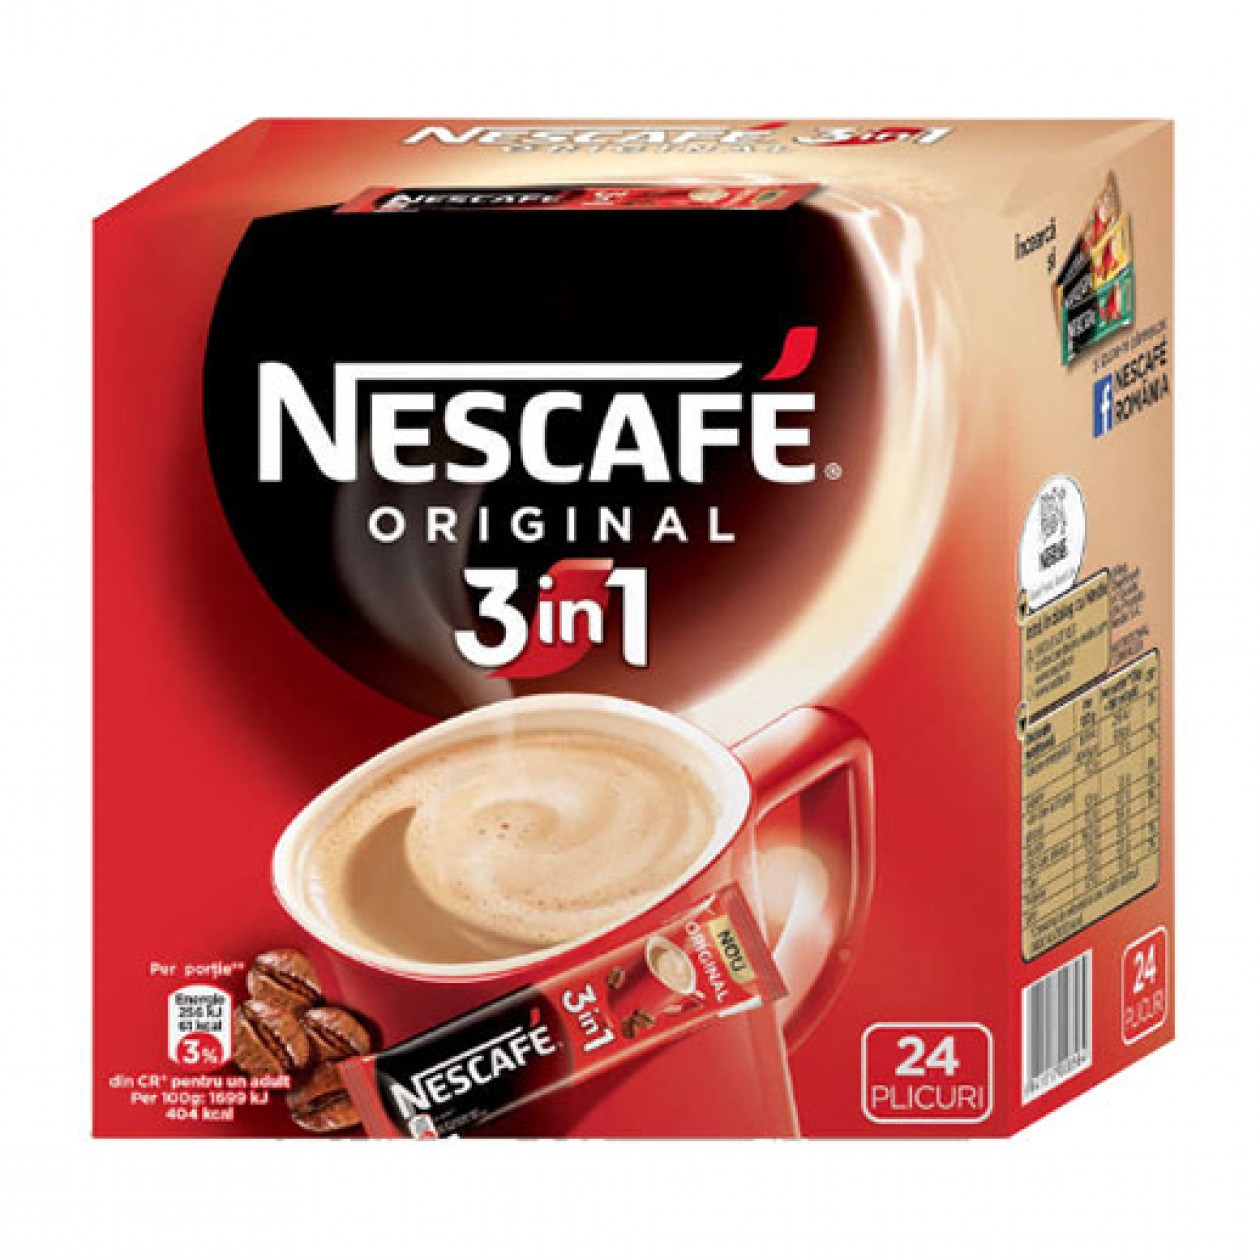 Nescafe Coffee 3 in 1 Original 24x15g